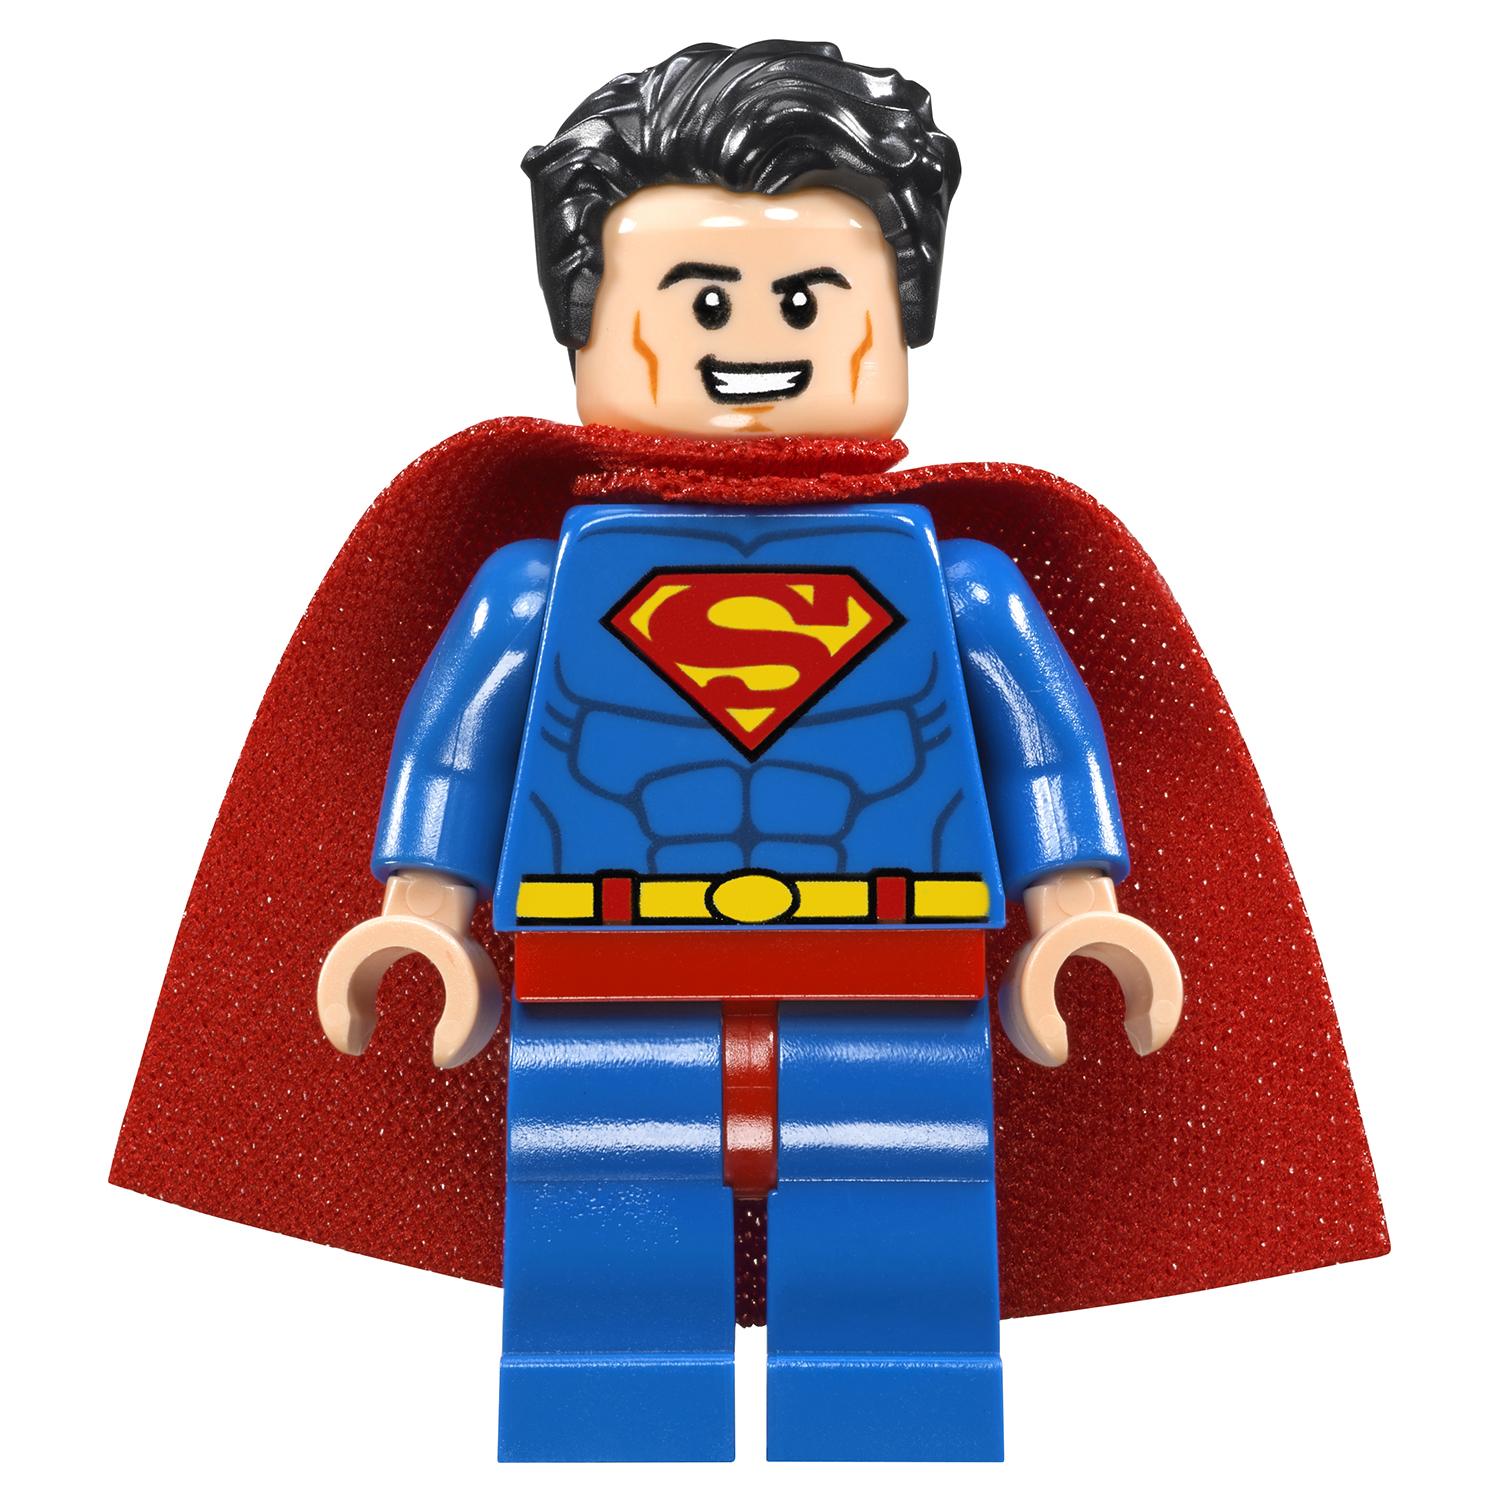 Lego Super Heroes 76096 Супермен и Крипто объединяют усилия